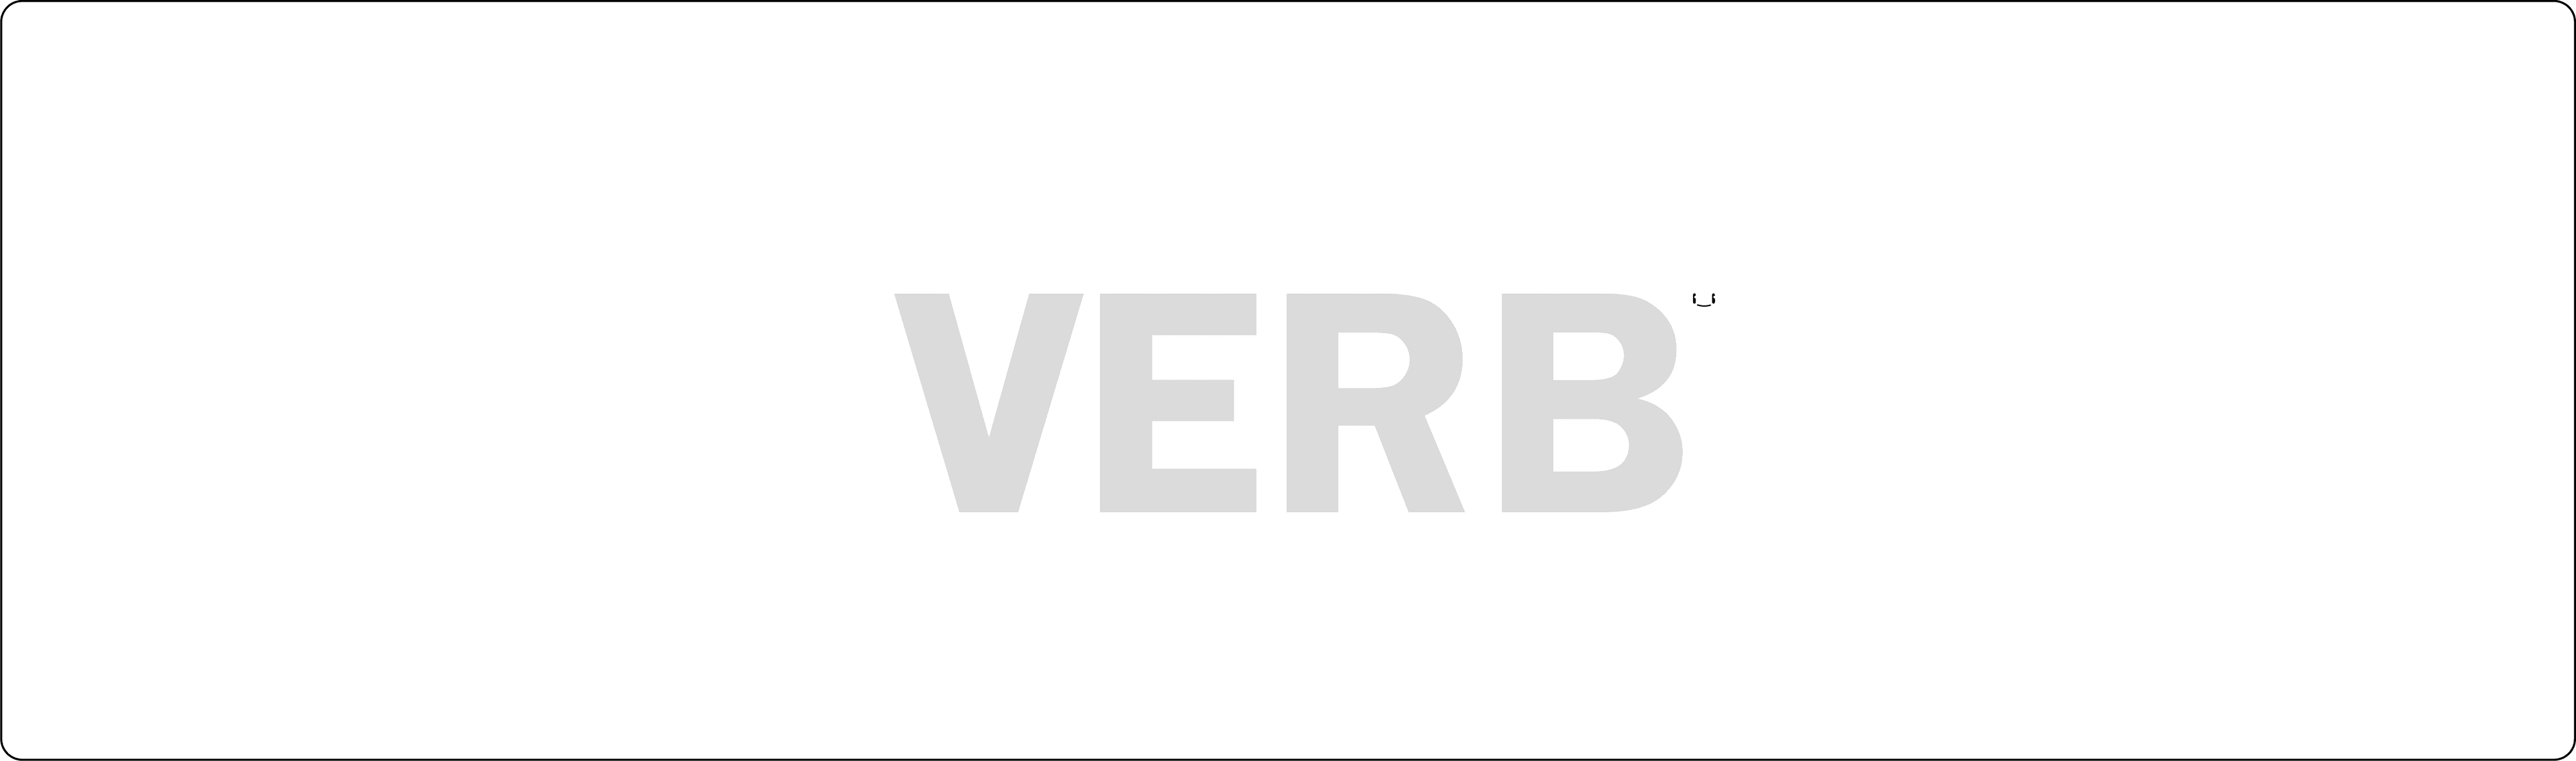 VerbTeam banner